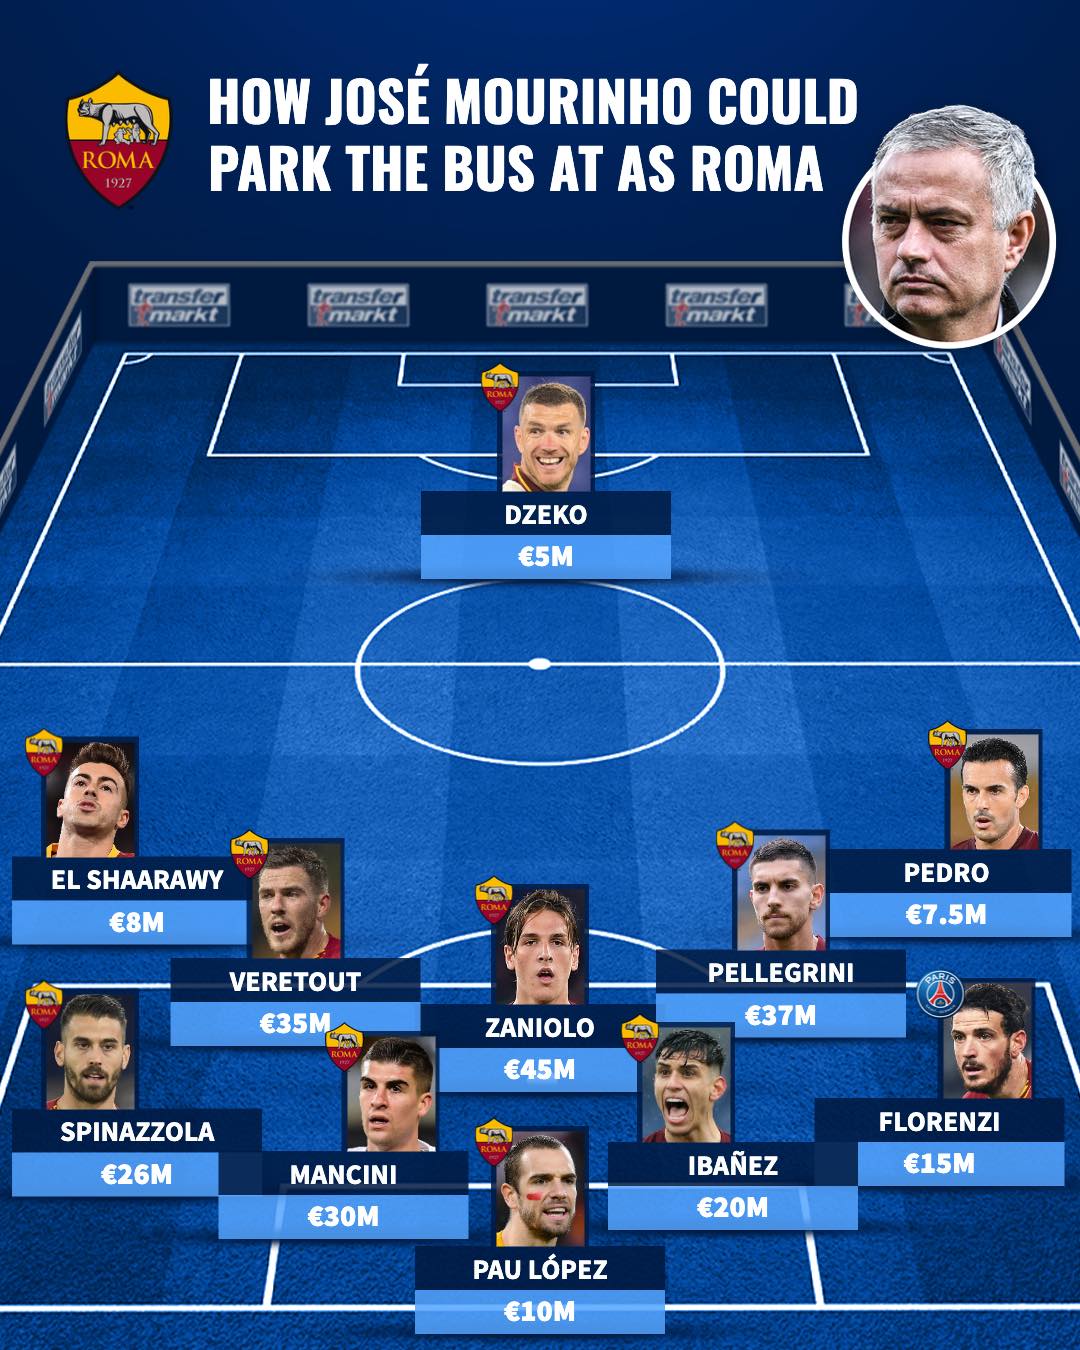 Đến AS Roma, Mourinho dựng đội hình 